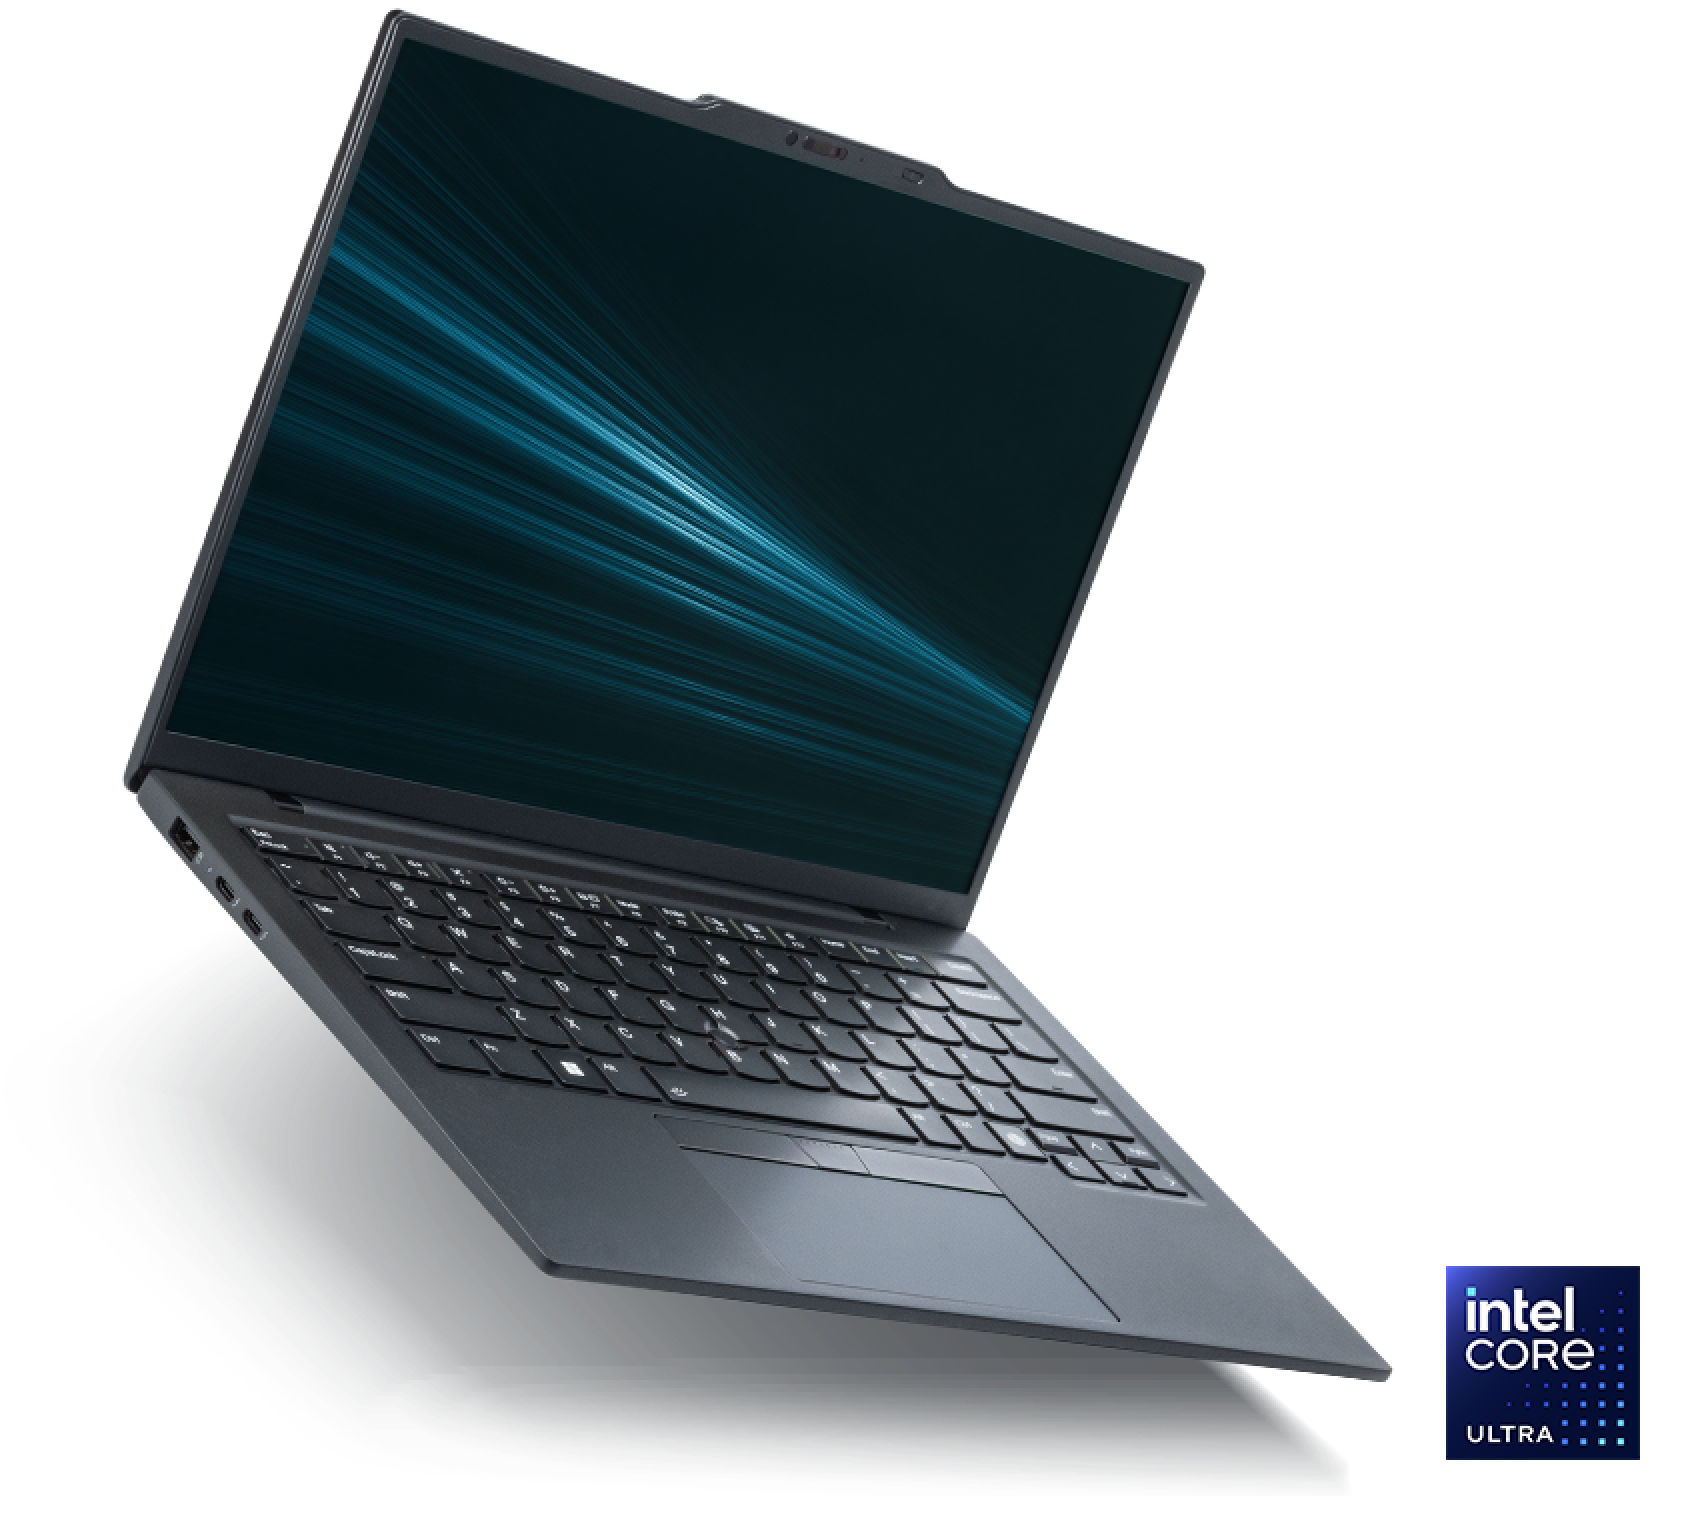 インテル® Core™ Ultra プロセッサー搭載インテル® Evo™ エディション準拠ノートブック PC。